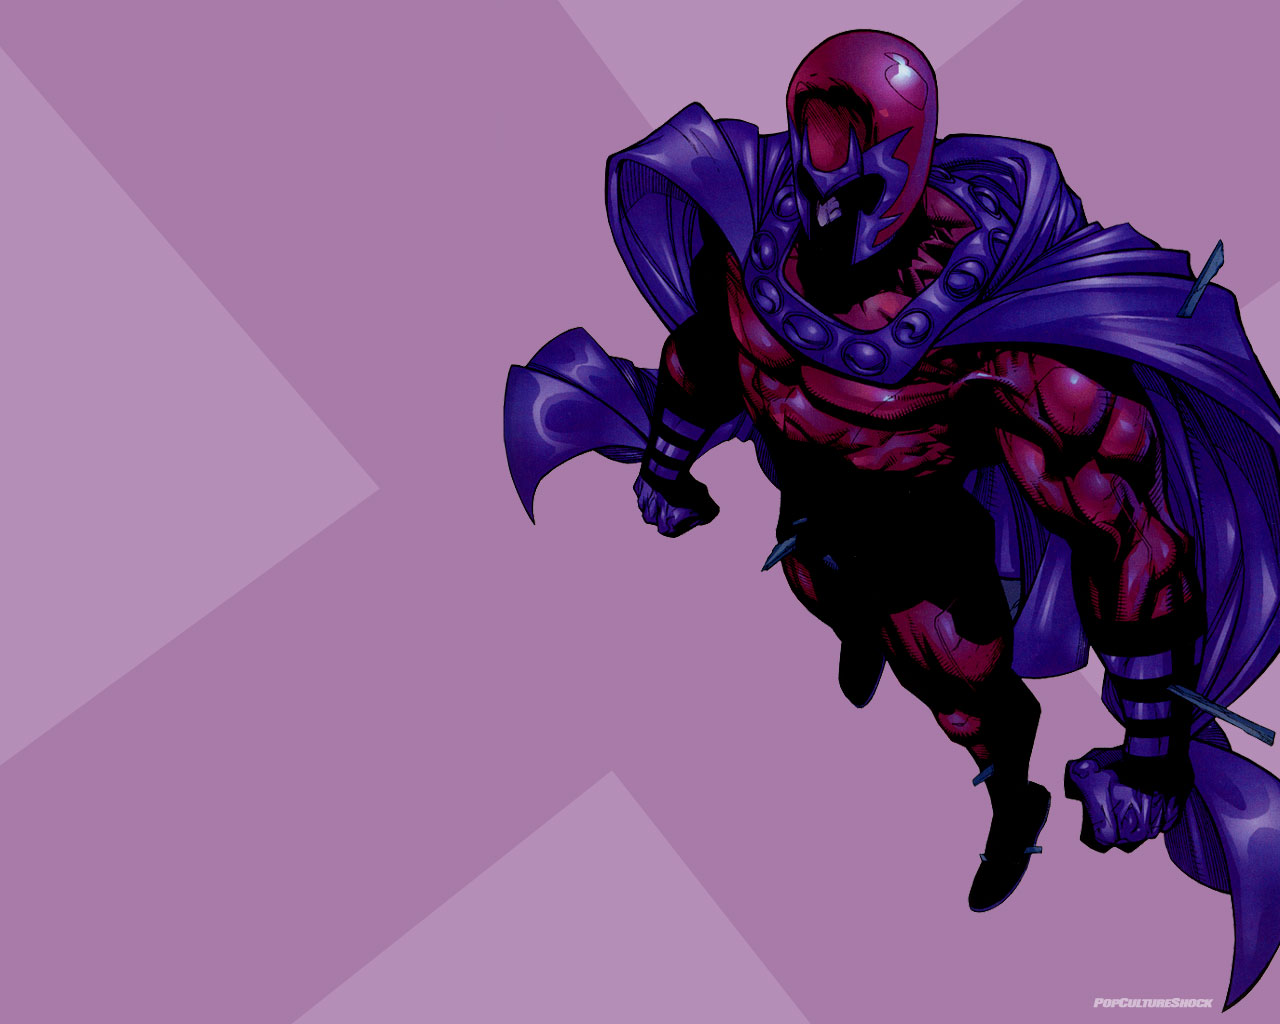 Download X Men Magneto Wallpaper 2560x1440 Wallpoper